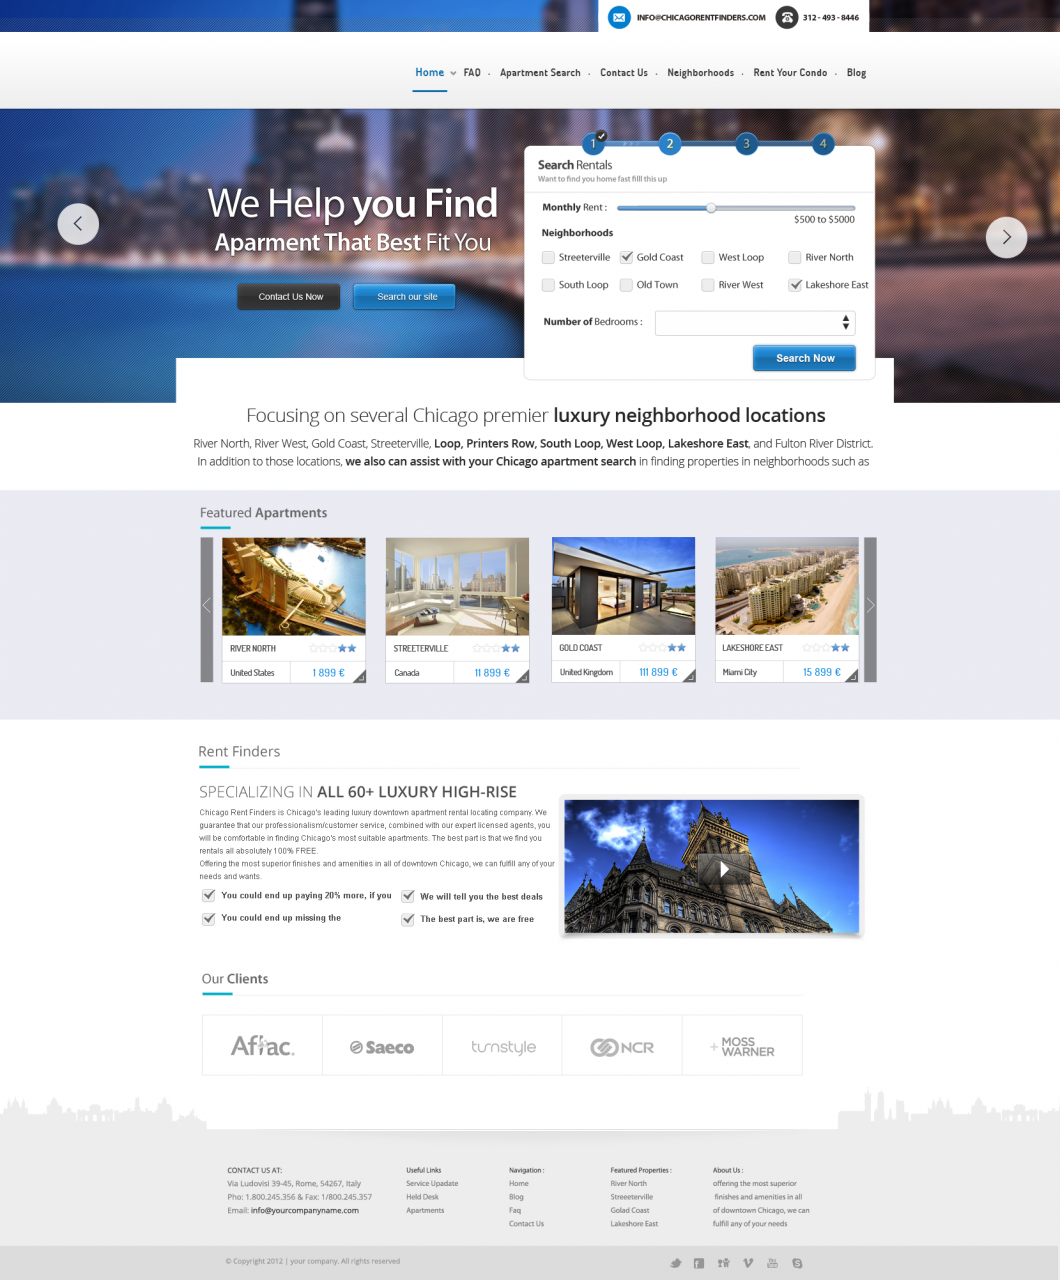 Travel Booking Website Design Template PSD